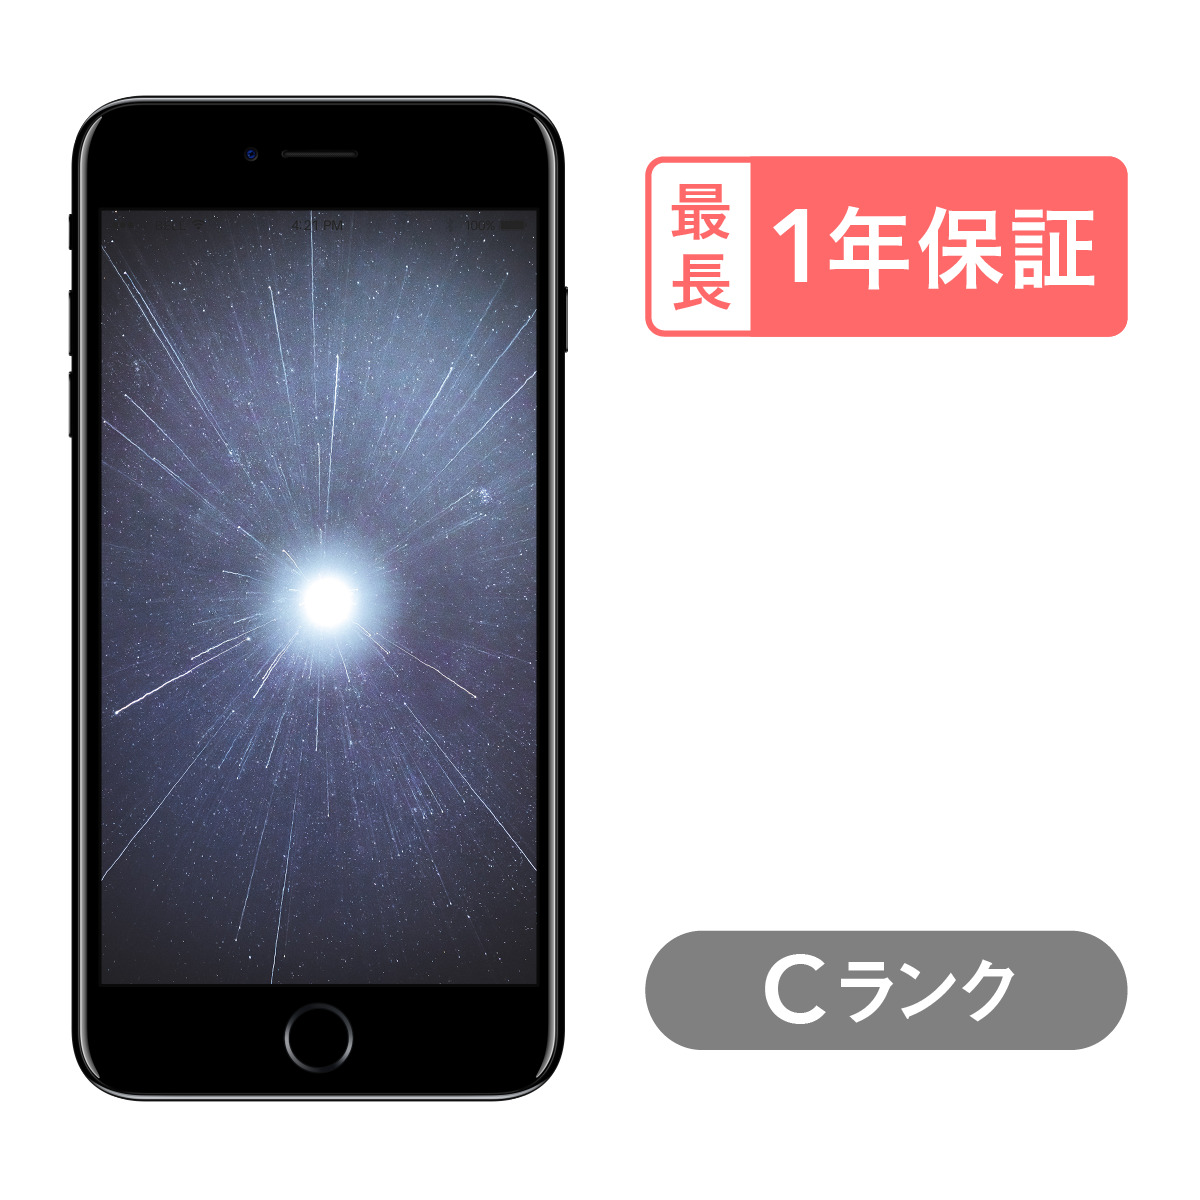 日本製得価SIMフリー端末iPhone 7 シルバー128GB SIMロック解除済み スマートフォン本体